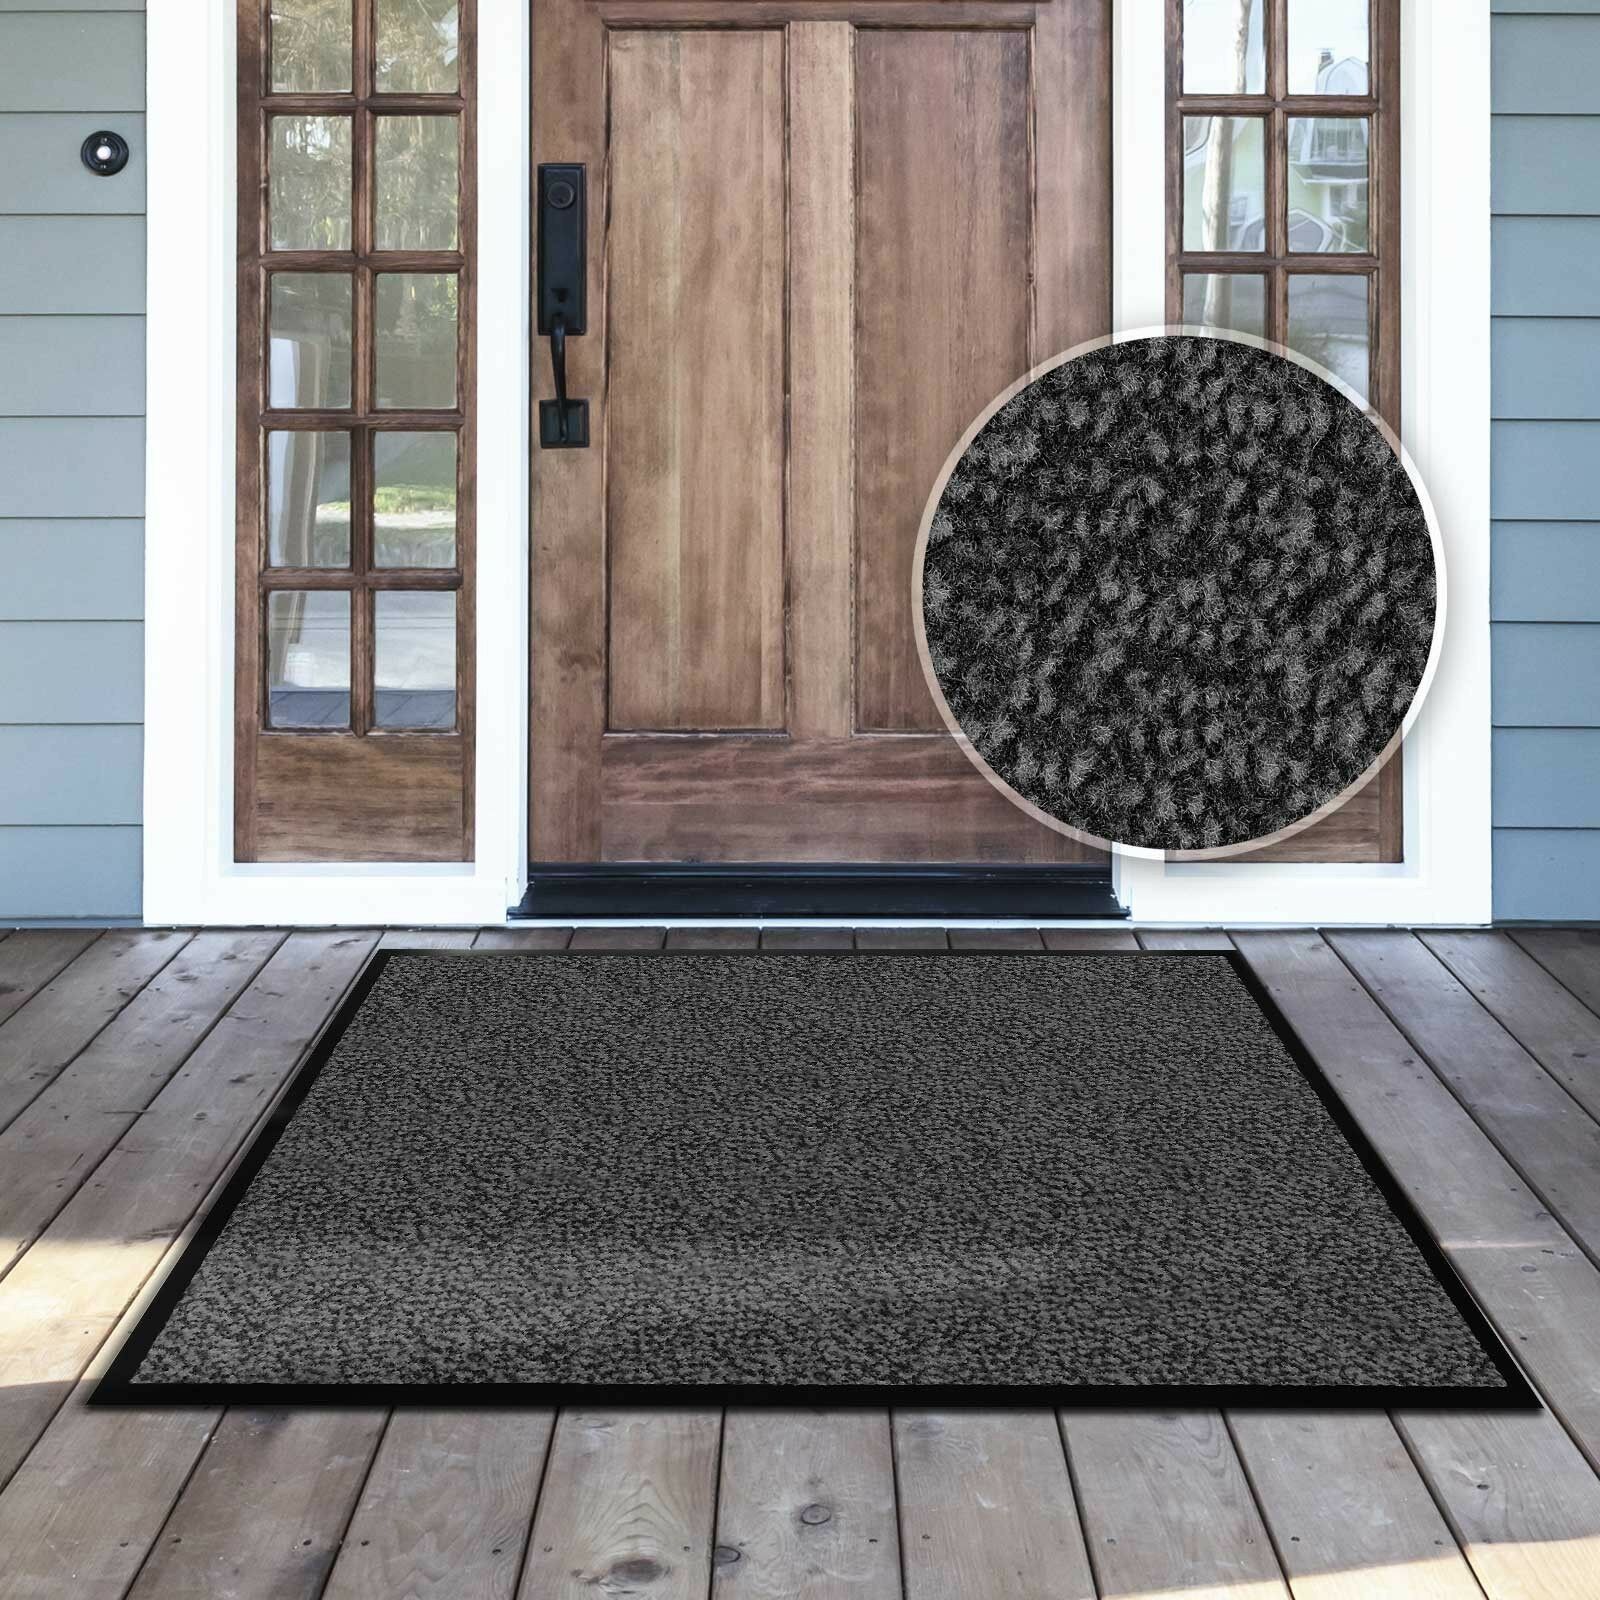 Door mats